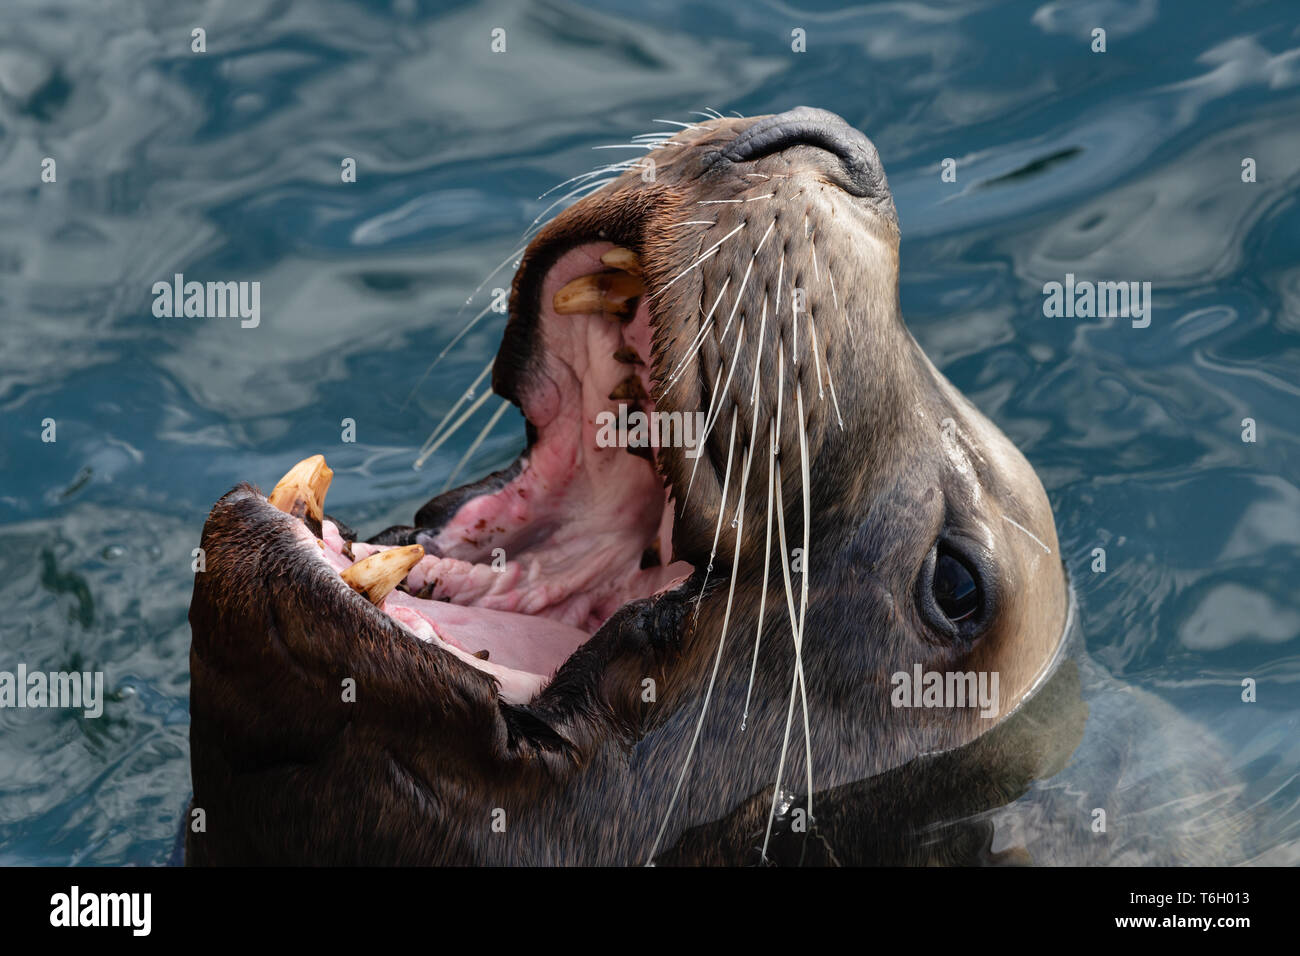 Closeup retrato de Steller leones salvajes con amplia boca abierta y dientes colmillos nadar en agua fría del Océano Pacífico Foto de stock